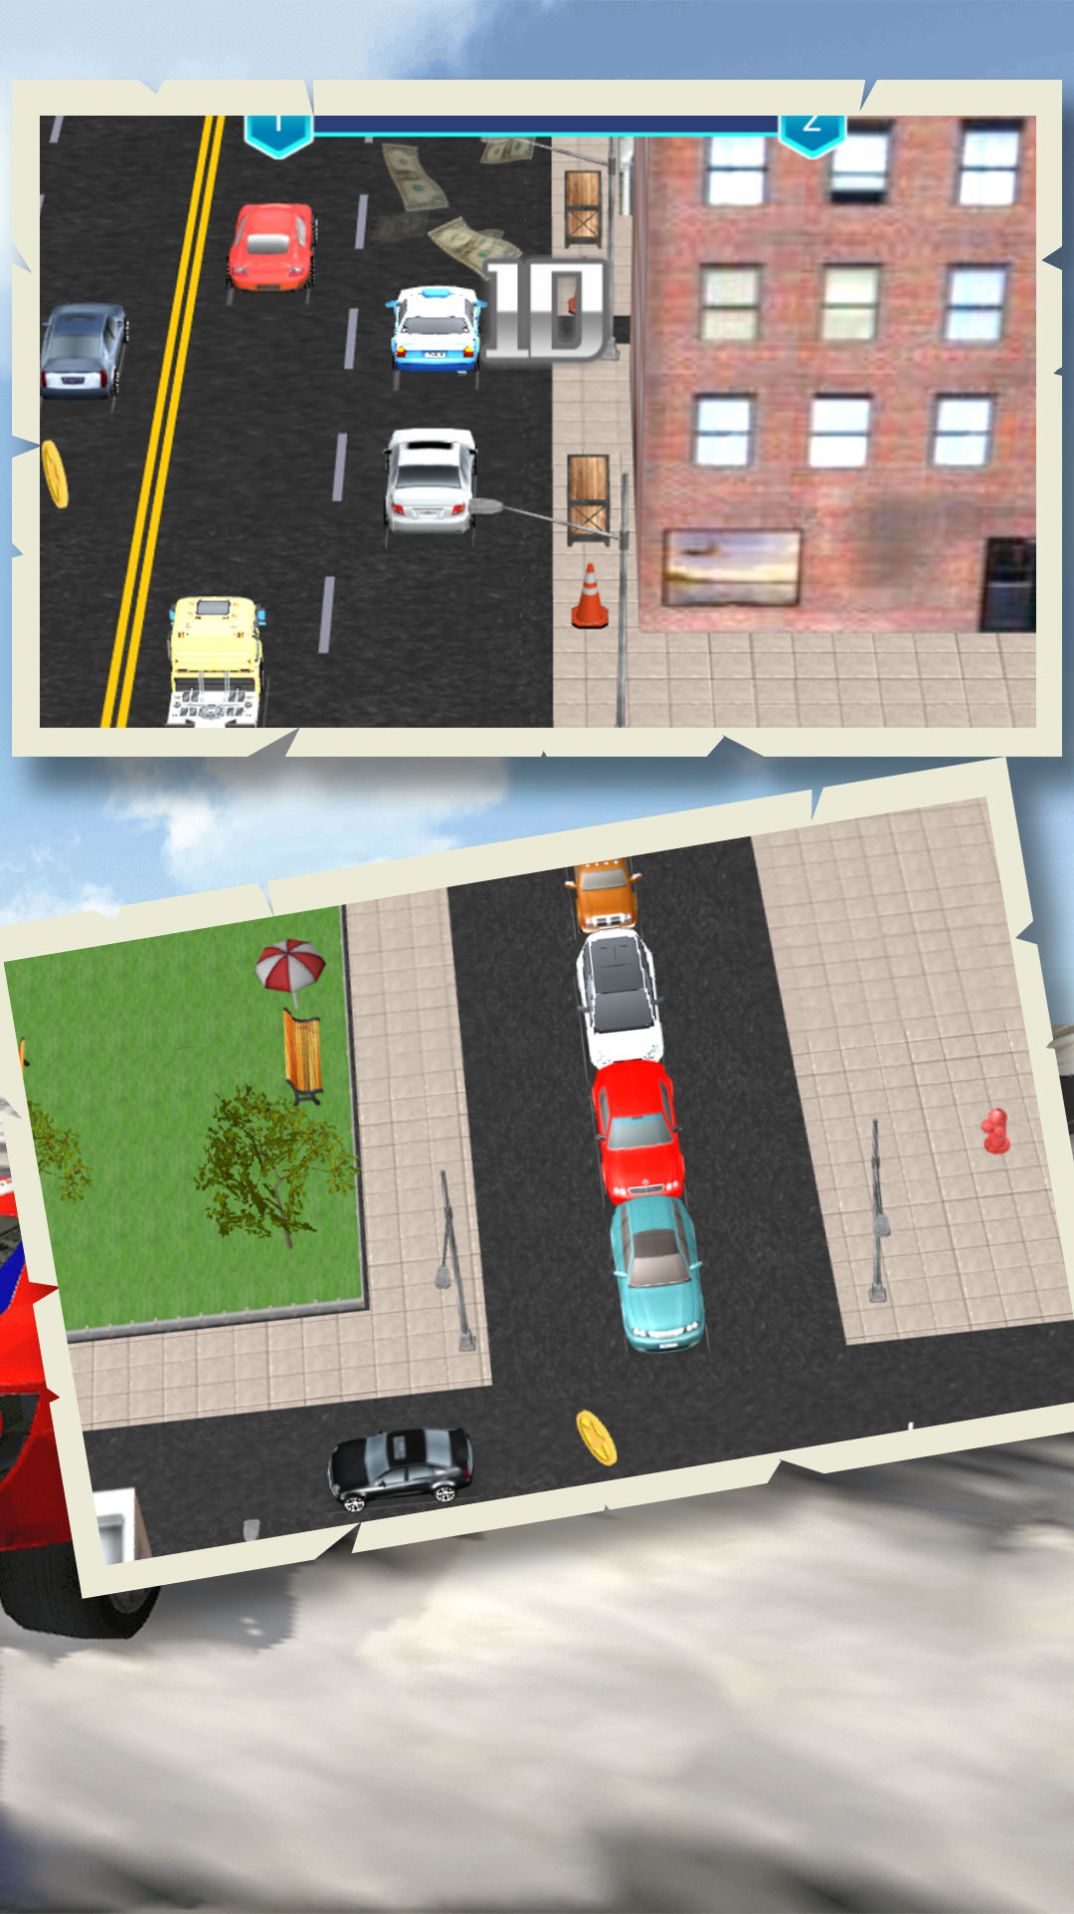 操控城市车辆通勤游戏图1